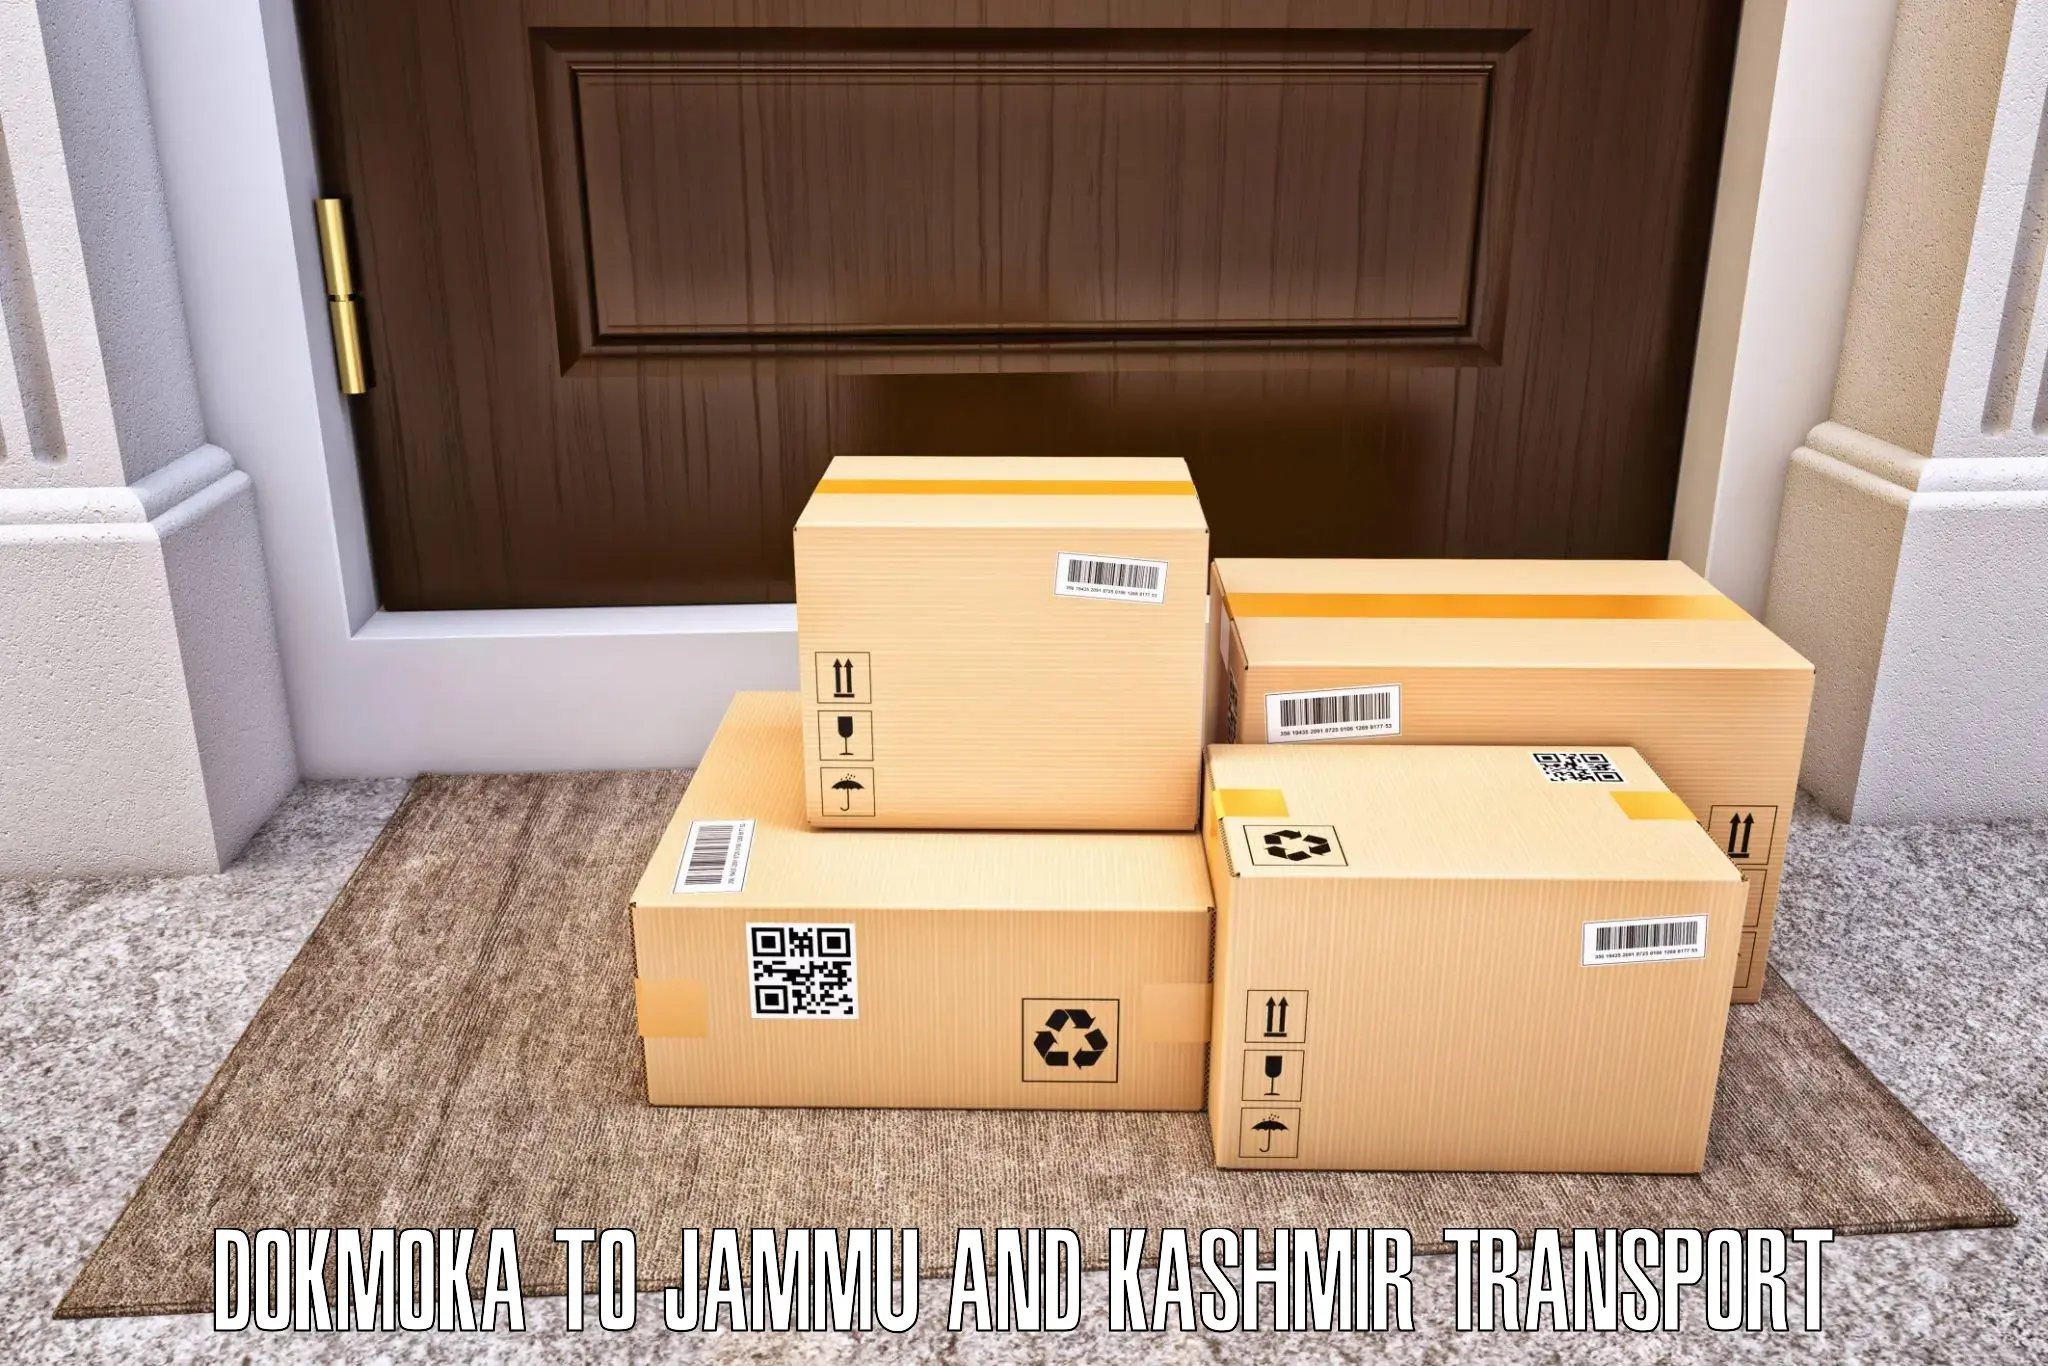 Bike shipping service in Dokmoka to University of Kashmir Srinagar